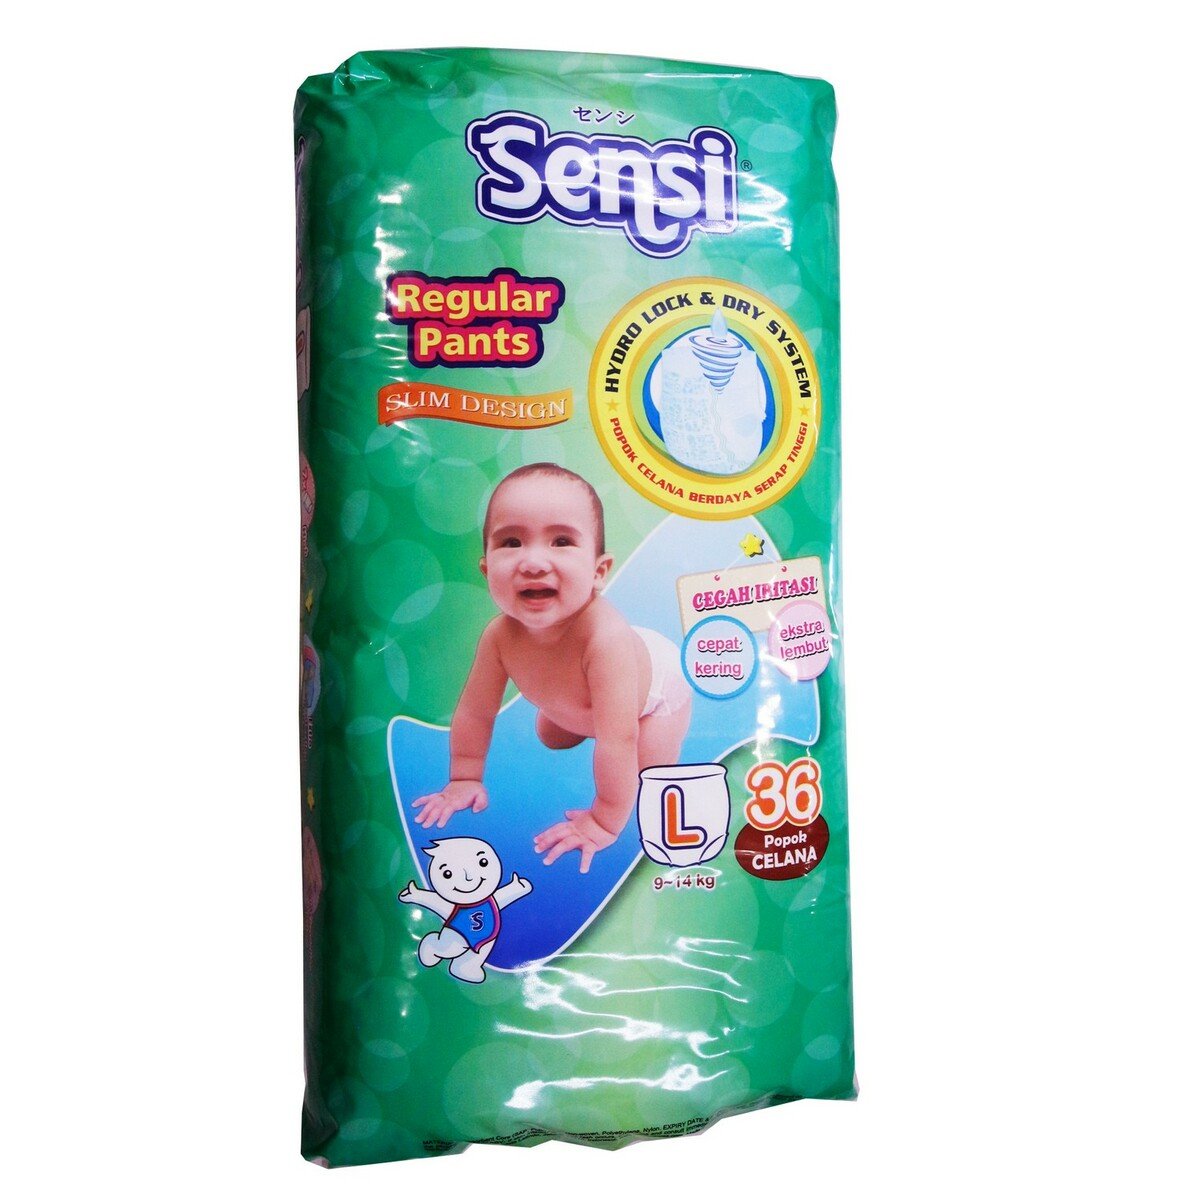 Sensi Baby Diaper Regular Pants L36